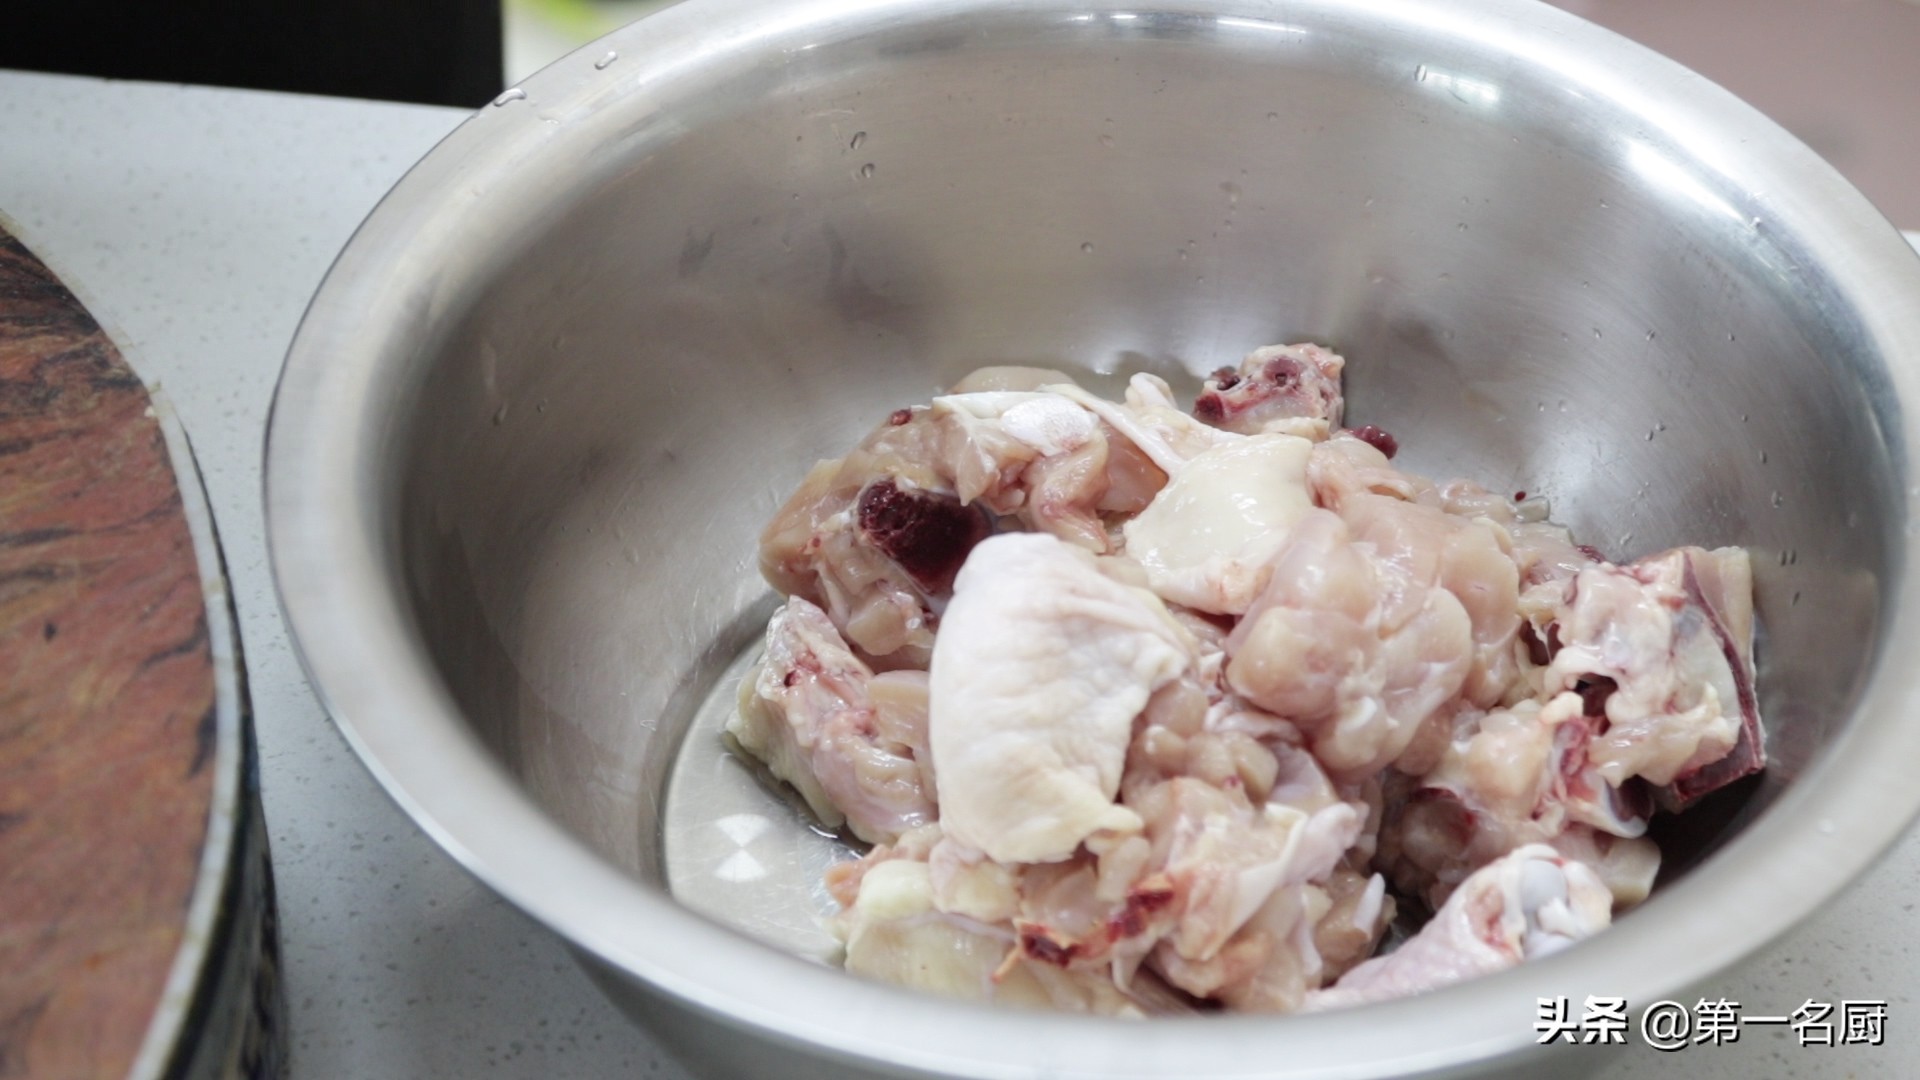 大盘鸡的做法 给大家分享一道大盘鸡的家常做法，配面条配米饭，都非常过瘾，一起来看看是怎么做的吧.